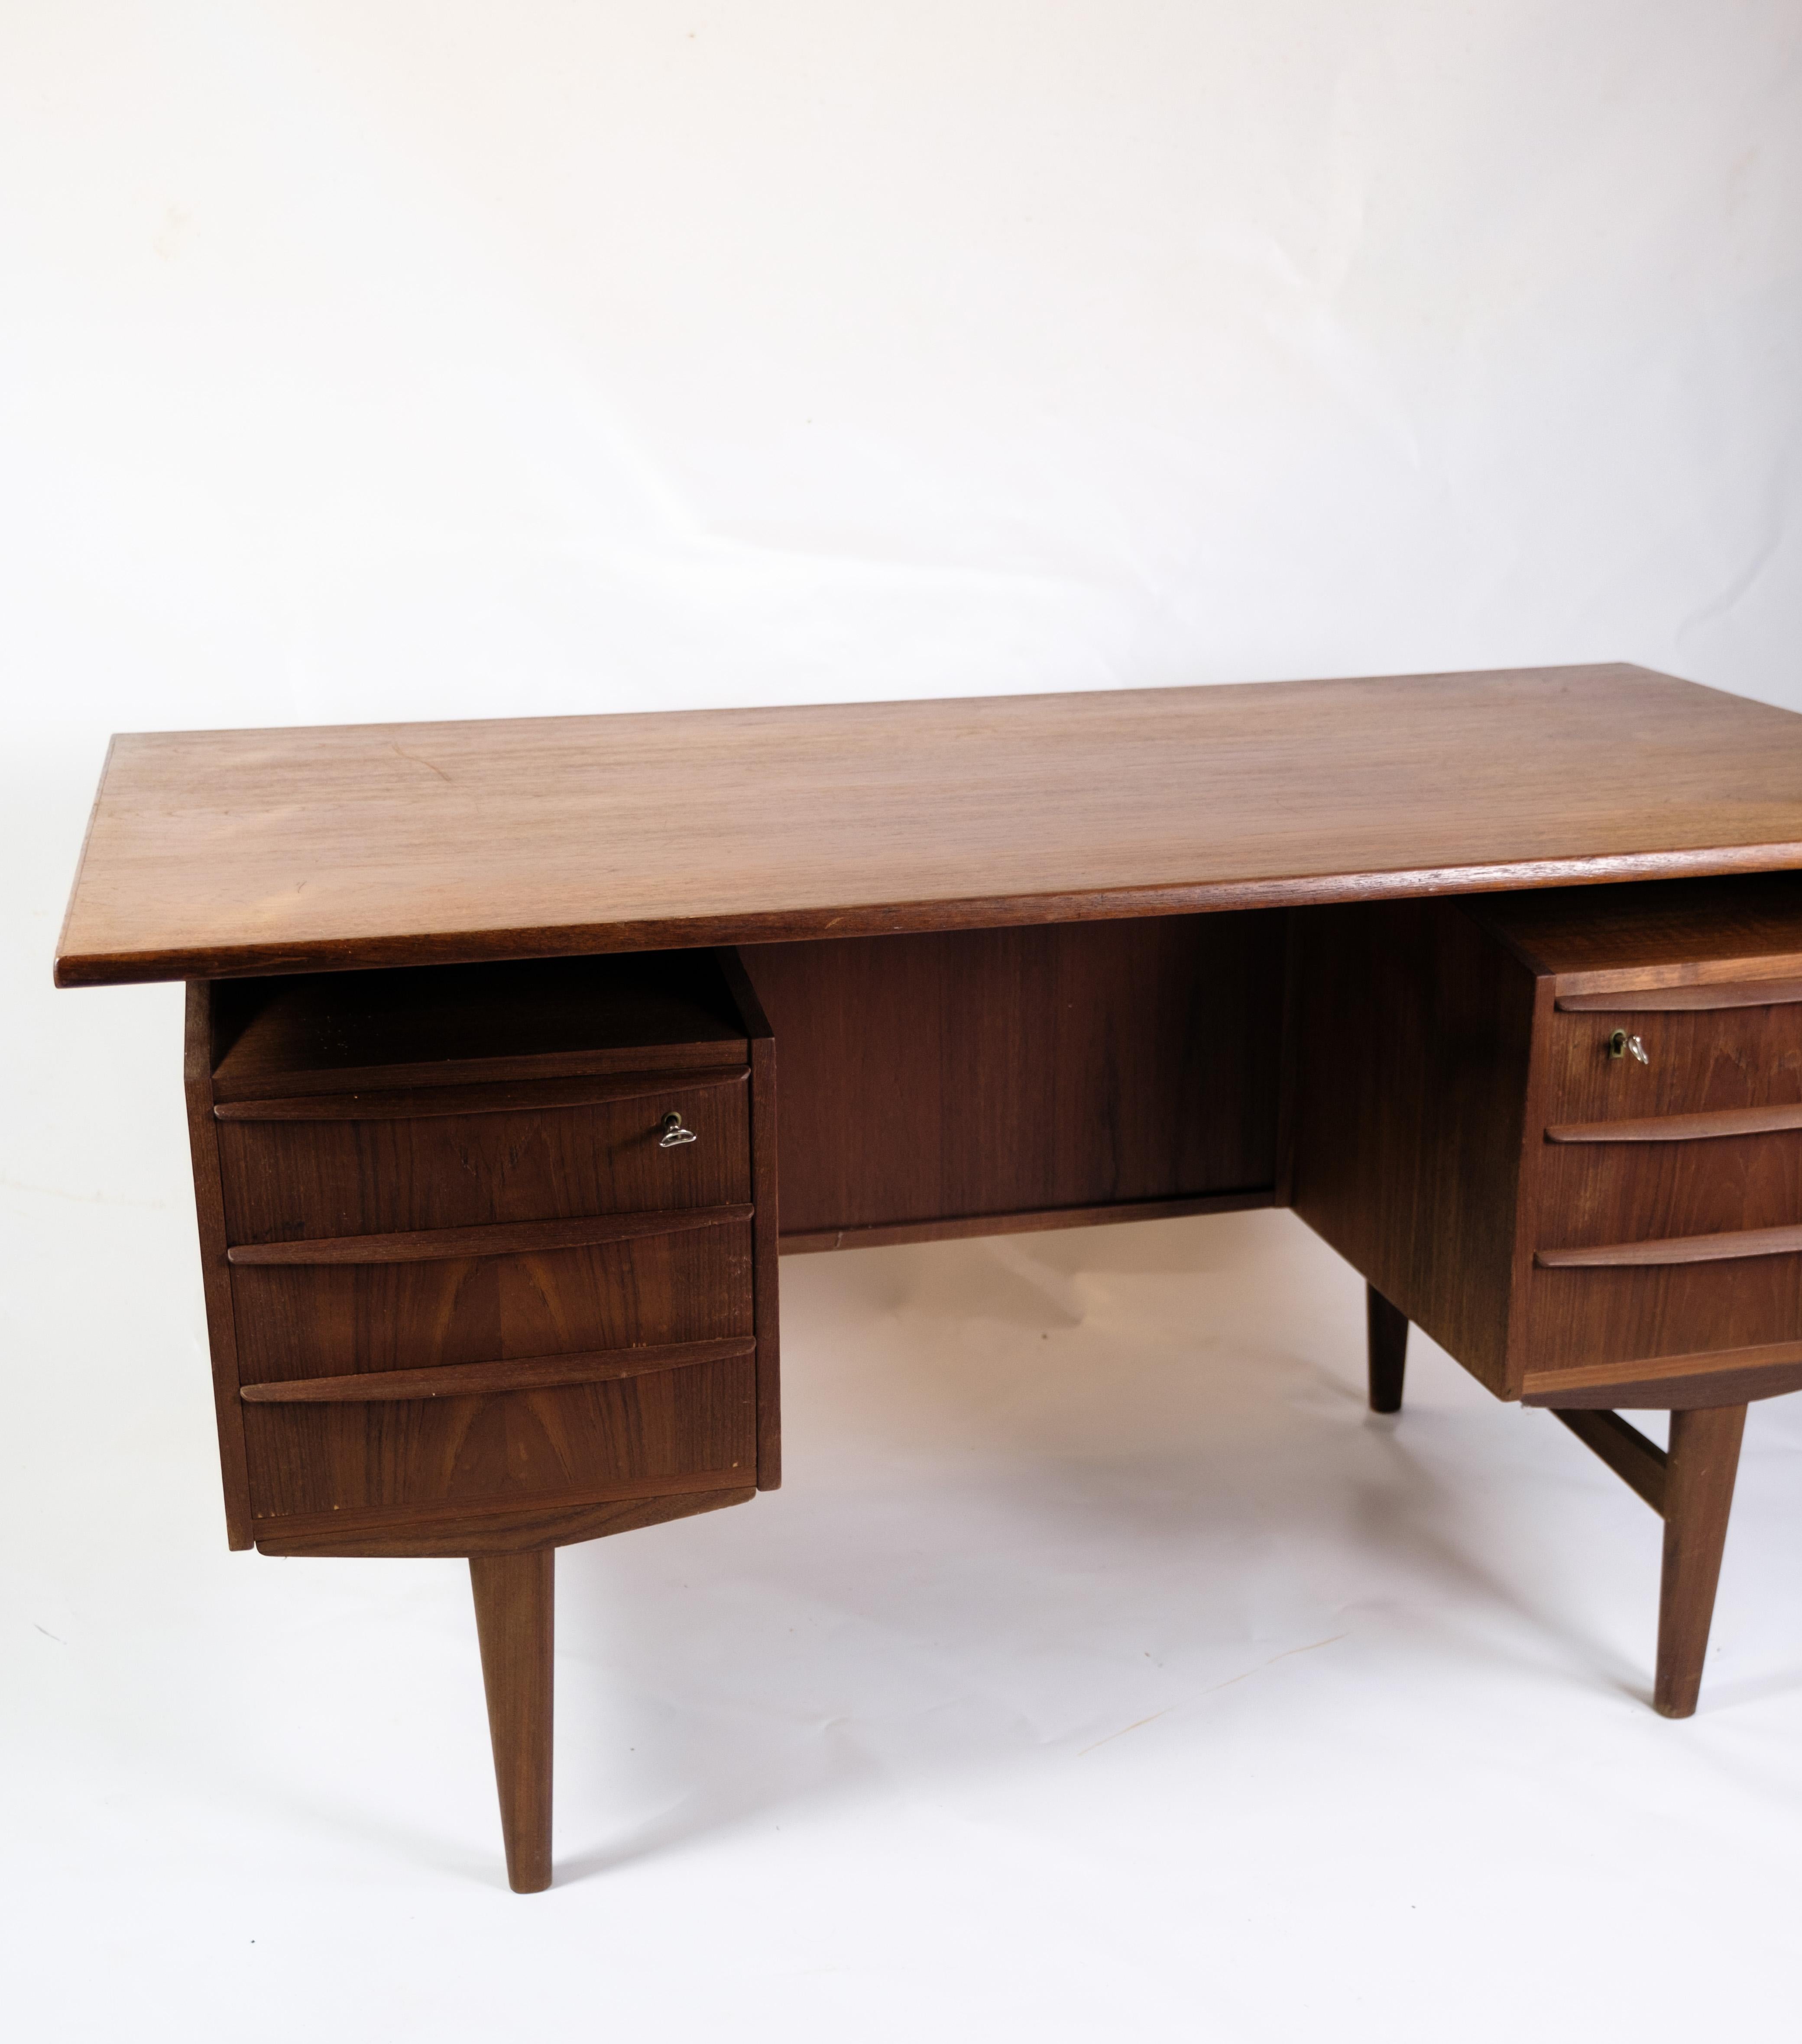 Dieser Schreibtisch ist ein schönes Beispiel für dänisches Design aus den 1960er Jahren, hergestellt aus Teakholz. Eines der bemerkenswertesten Merkmale dieses Tisches ist die schwebende Tischplatte, die eine luftige und leichte Ästhetik